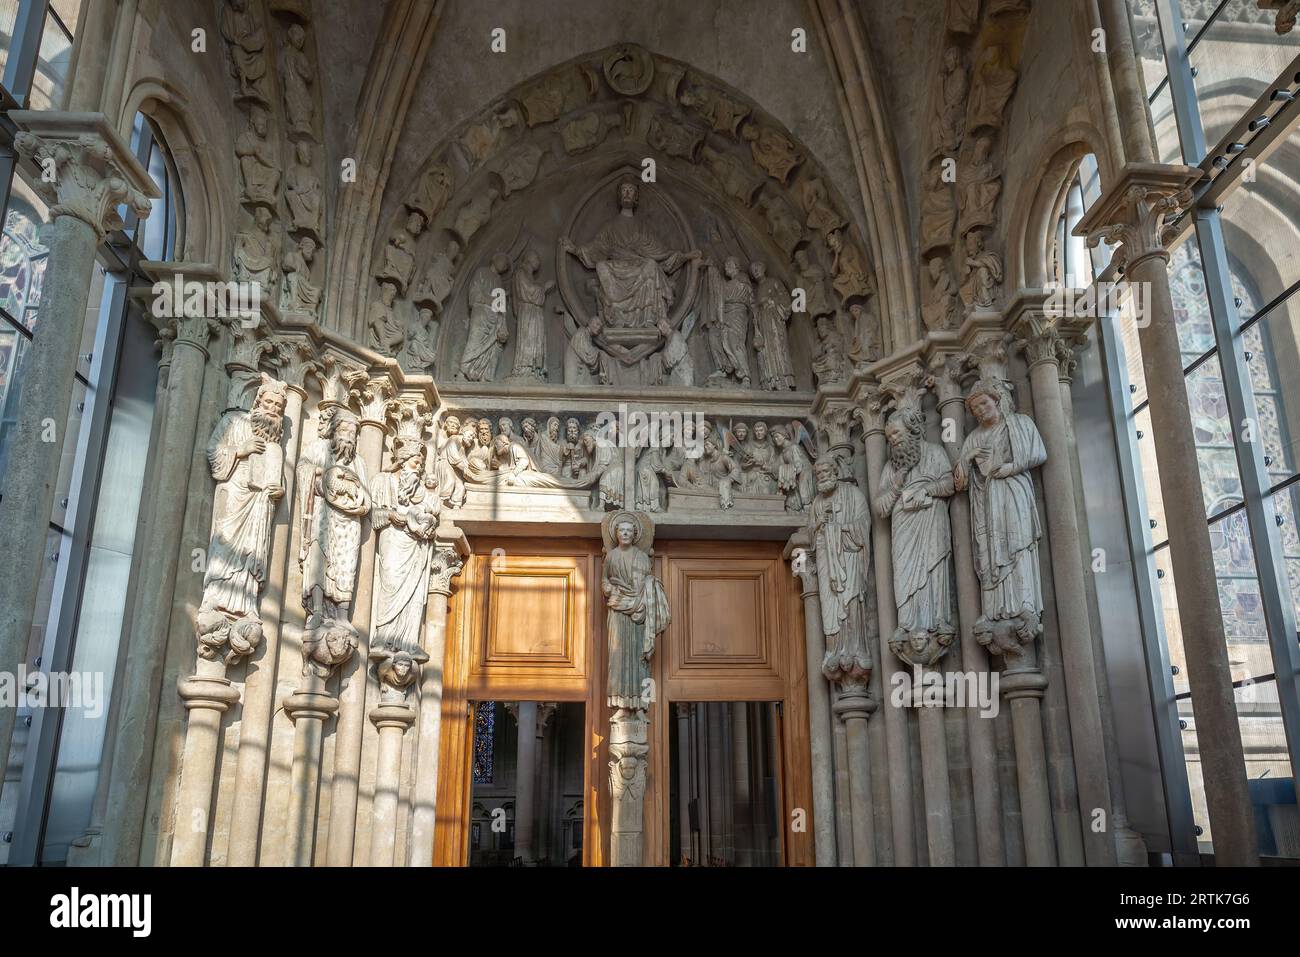 Porte à l'intérieur de la cathédrale de Lausanne - Lausanne, Suisse Banque D'Images